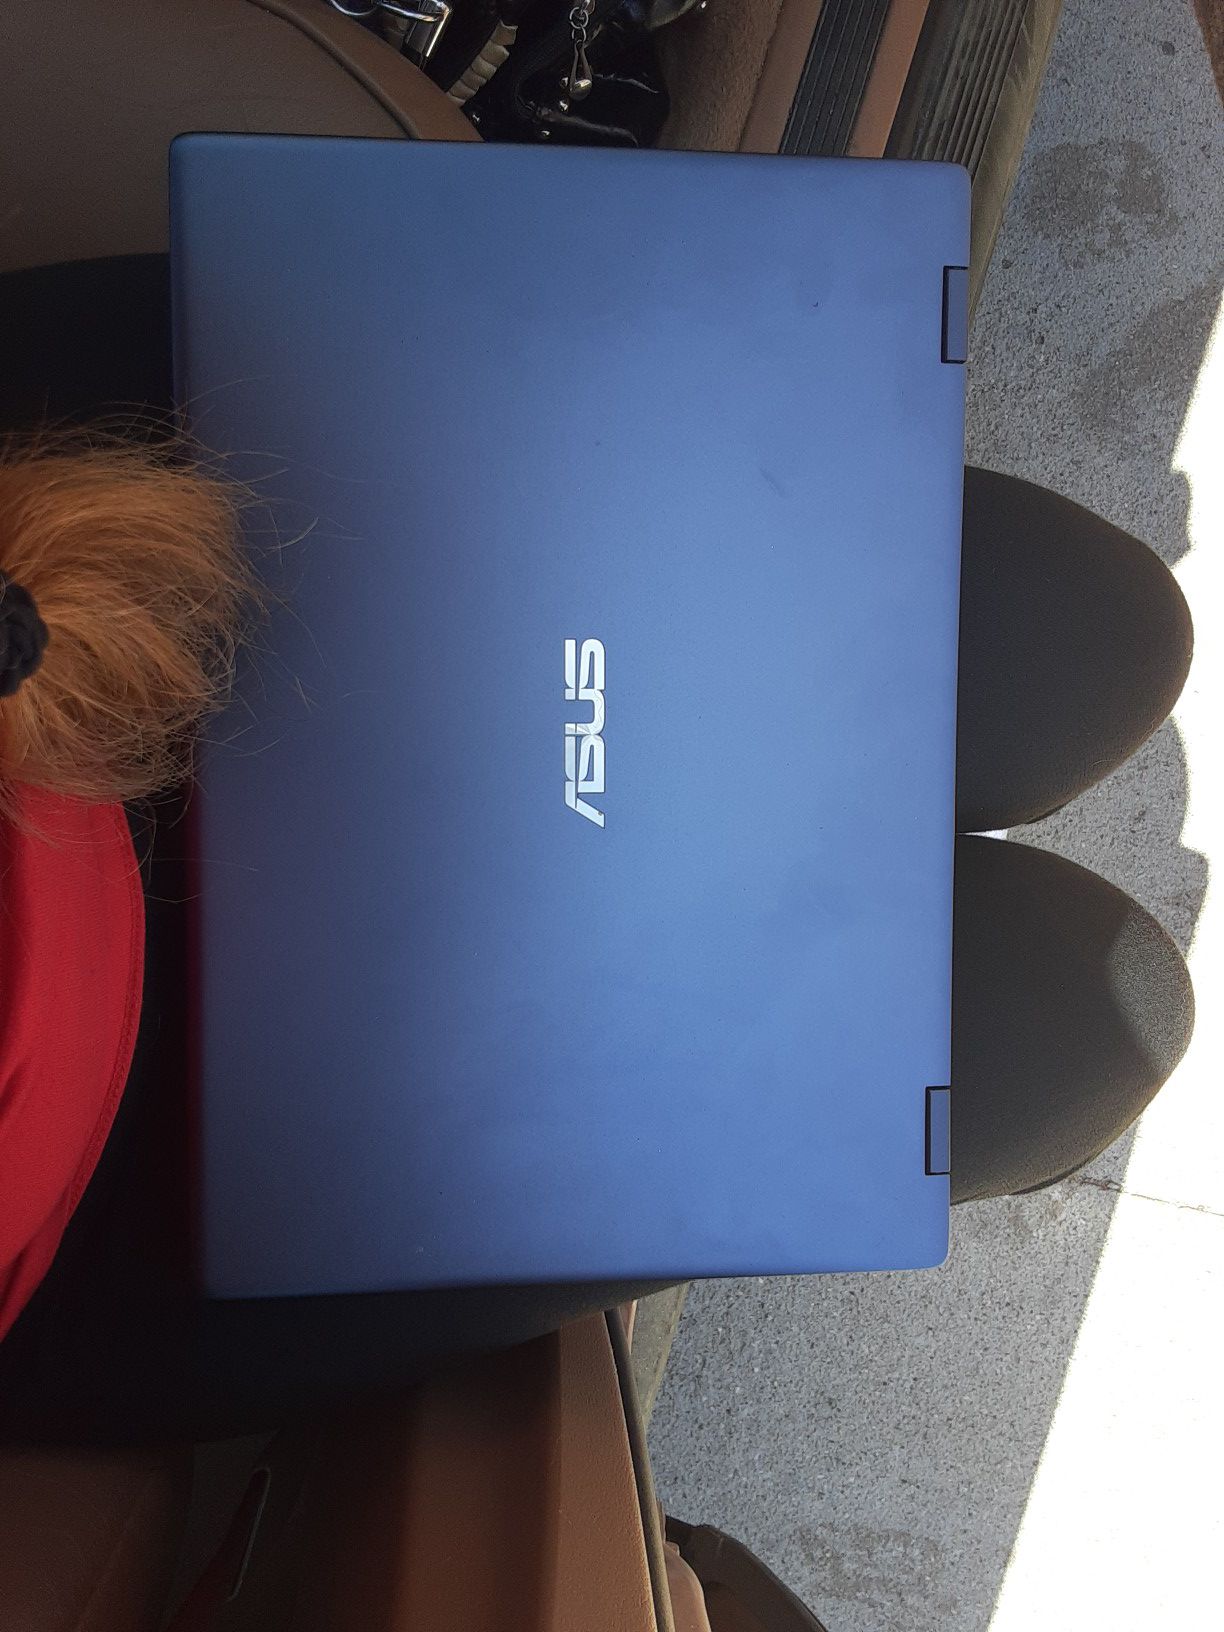 Asus vivobook flip 15 inch i3 2n1 touch 4g/128g laptop